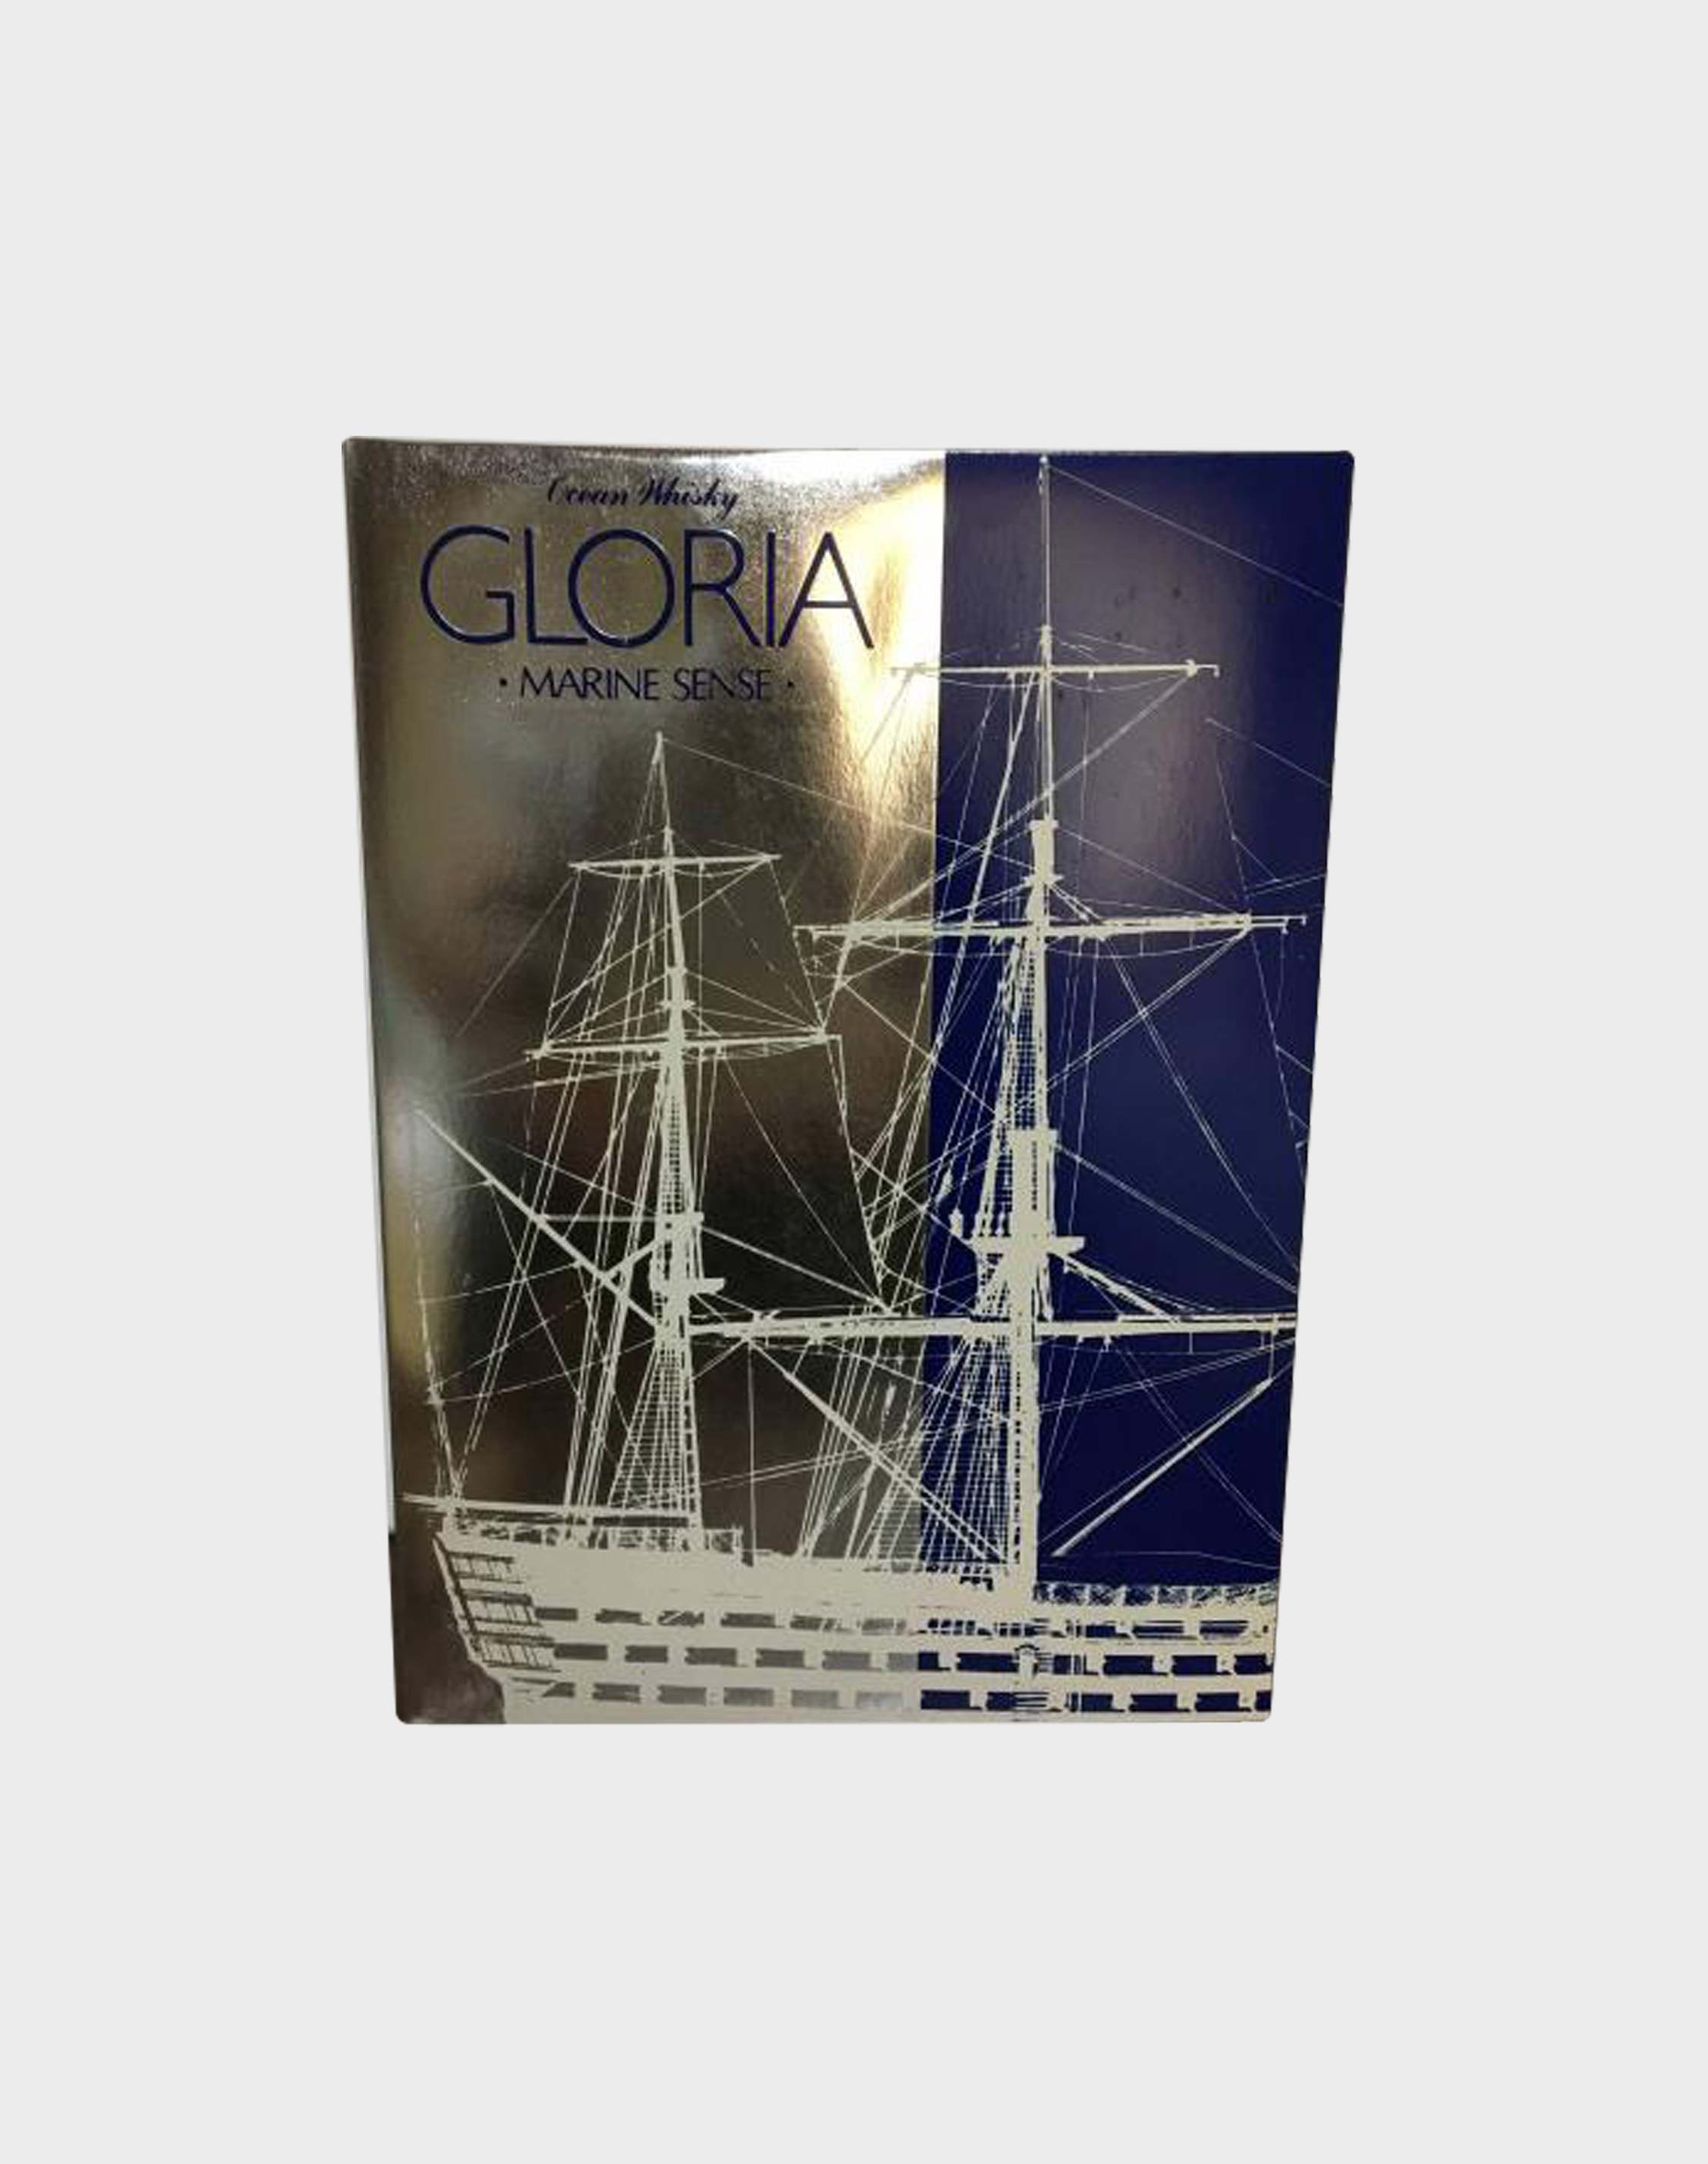 Ocean Whisky 'Gloria' Marine Sense